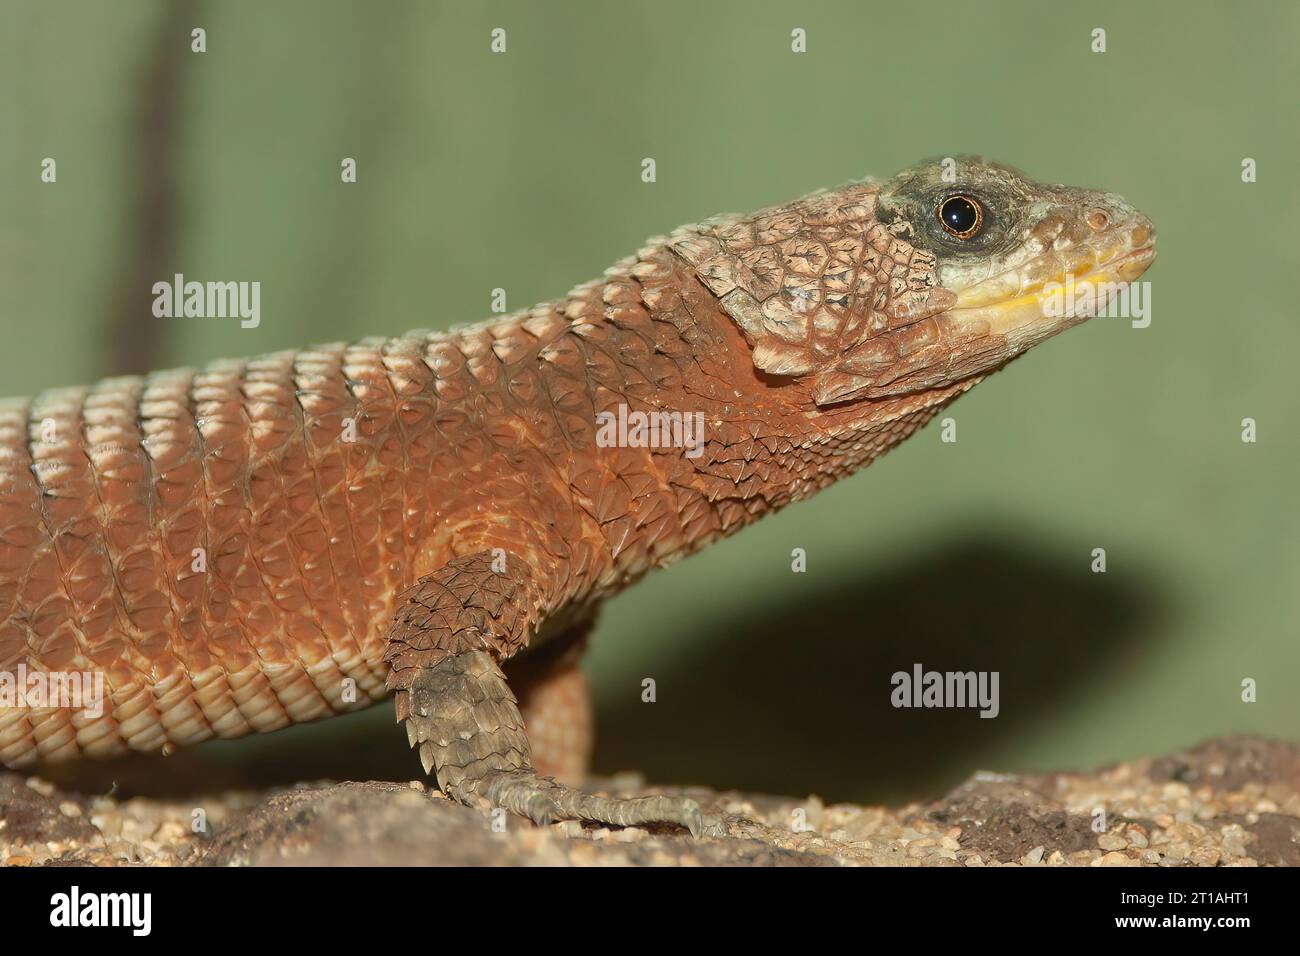 Detailed closeup on a giant girdled lizard, Cordylus giganteus sitting on wood Stock Photo